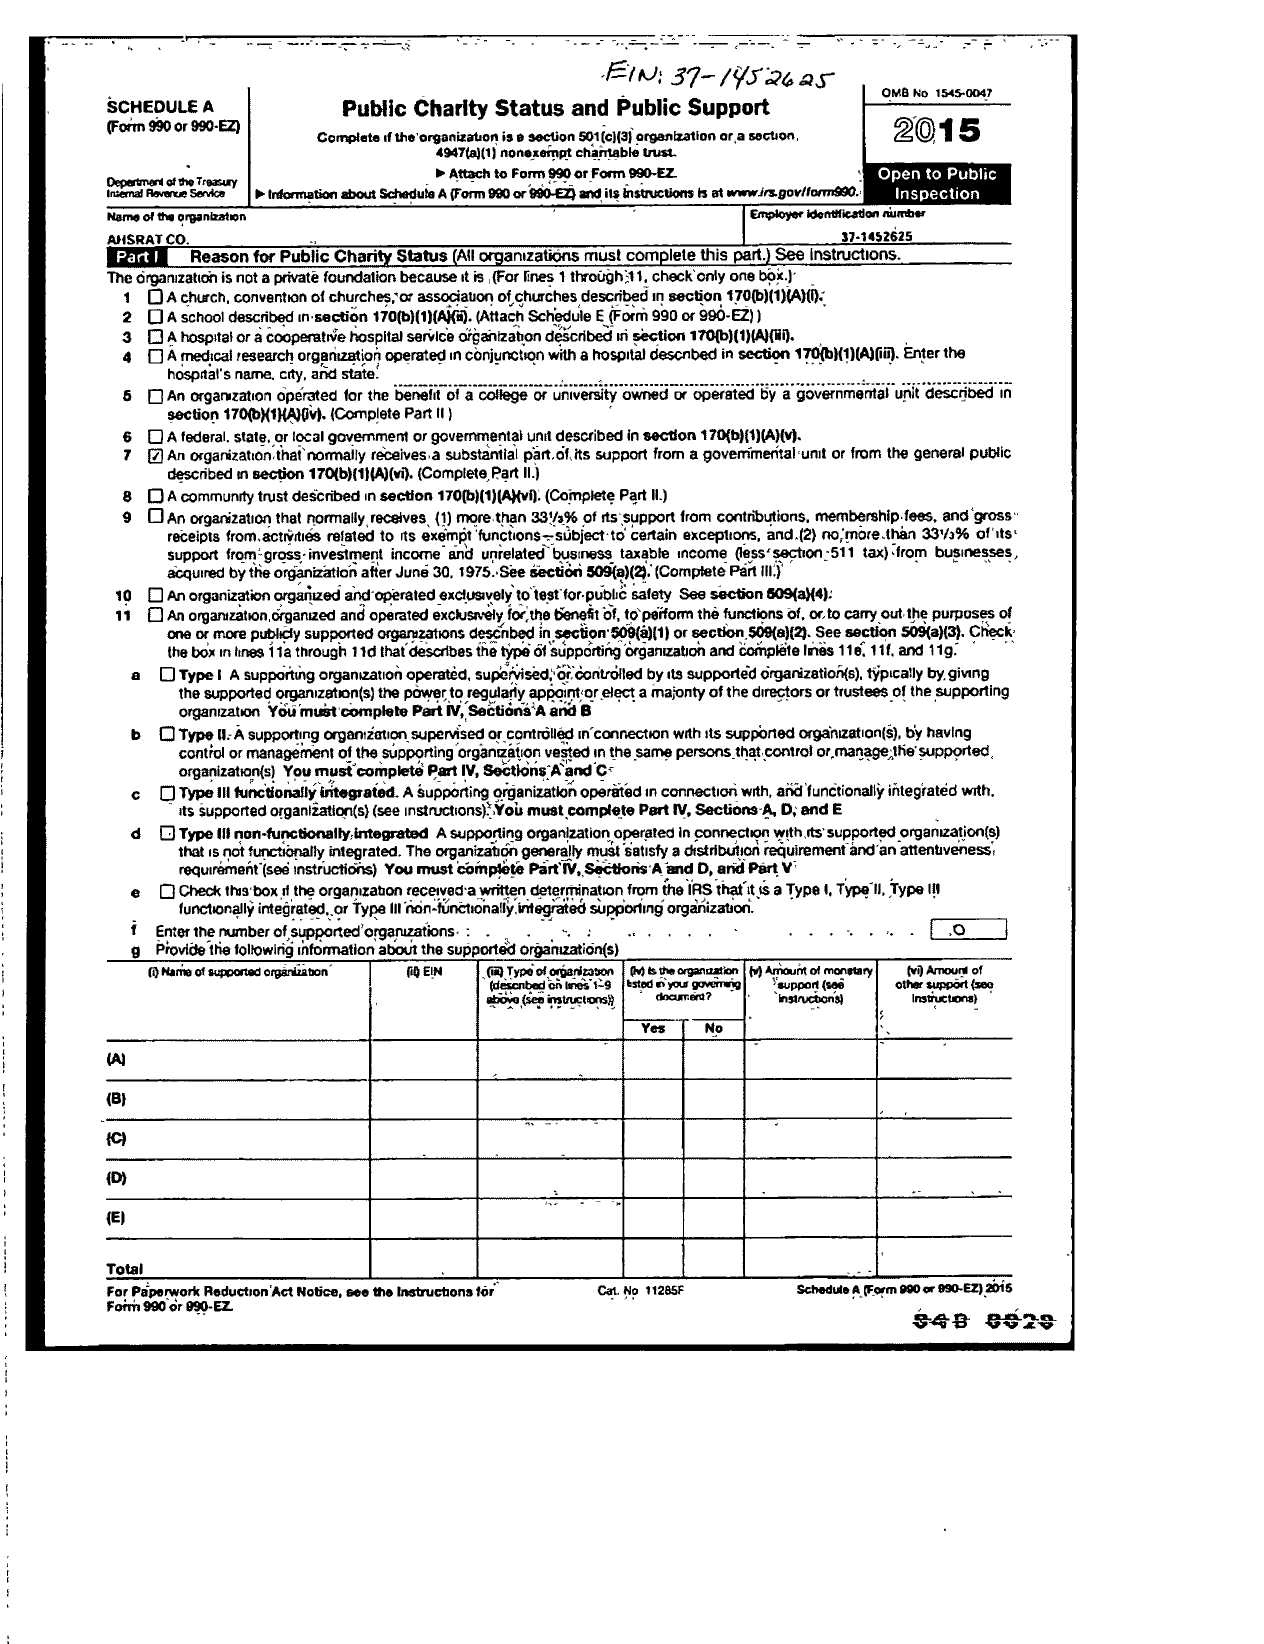 Image of first page of 2015 Form 990ER for Ashrat